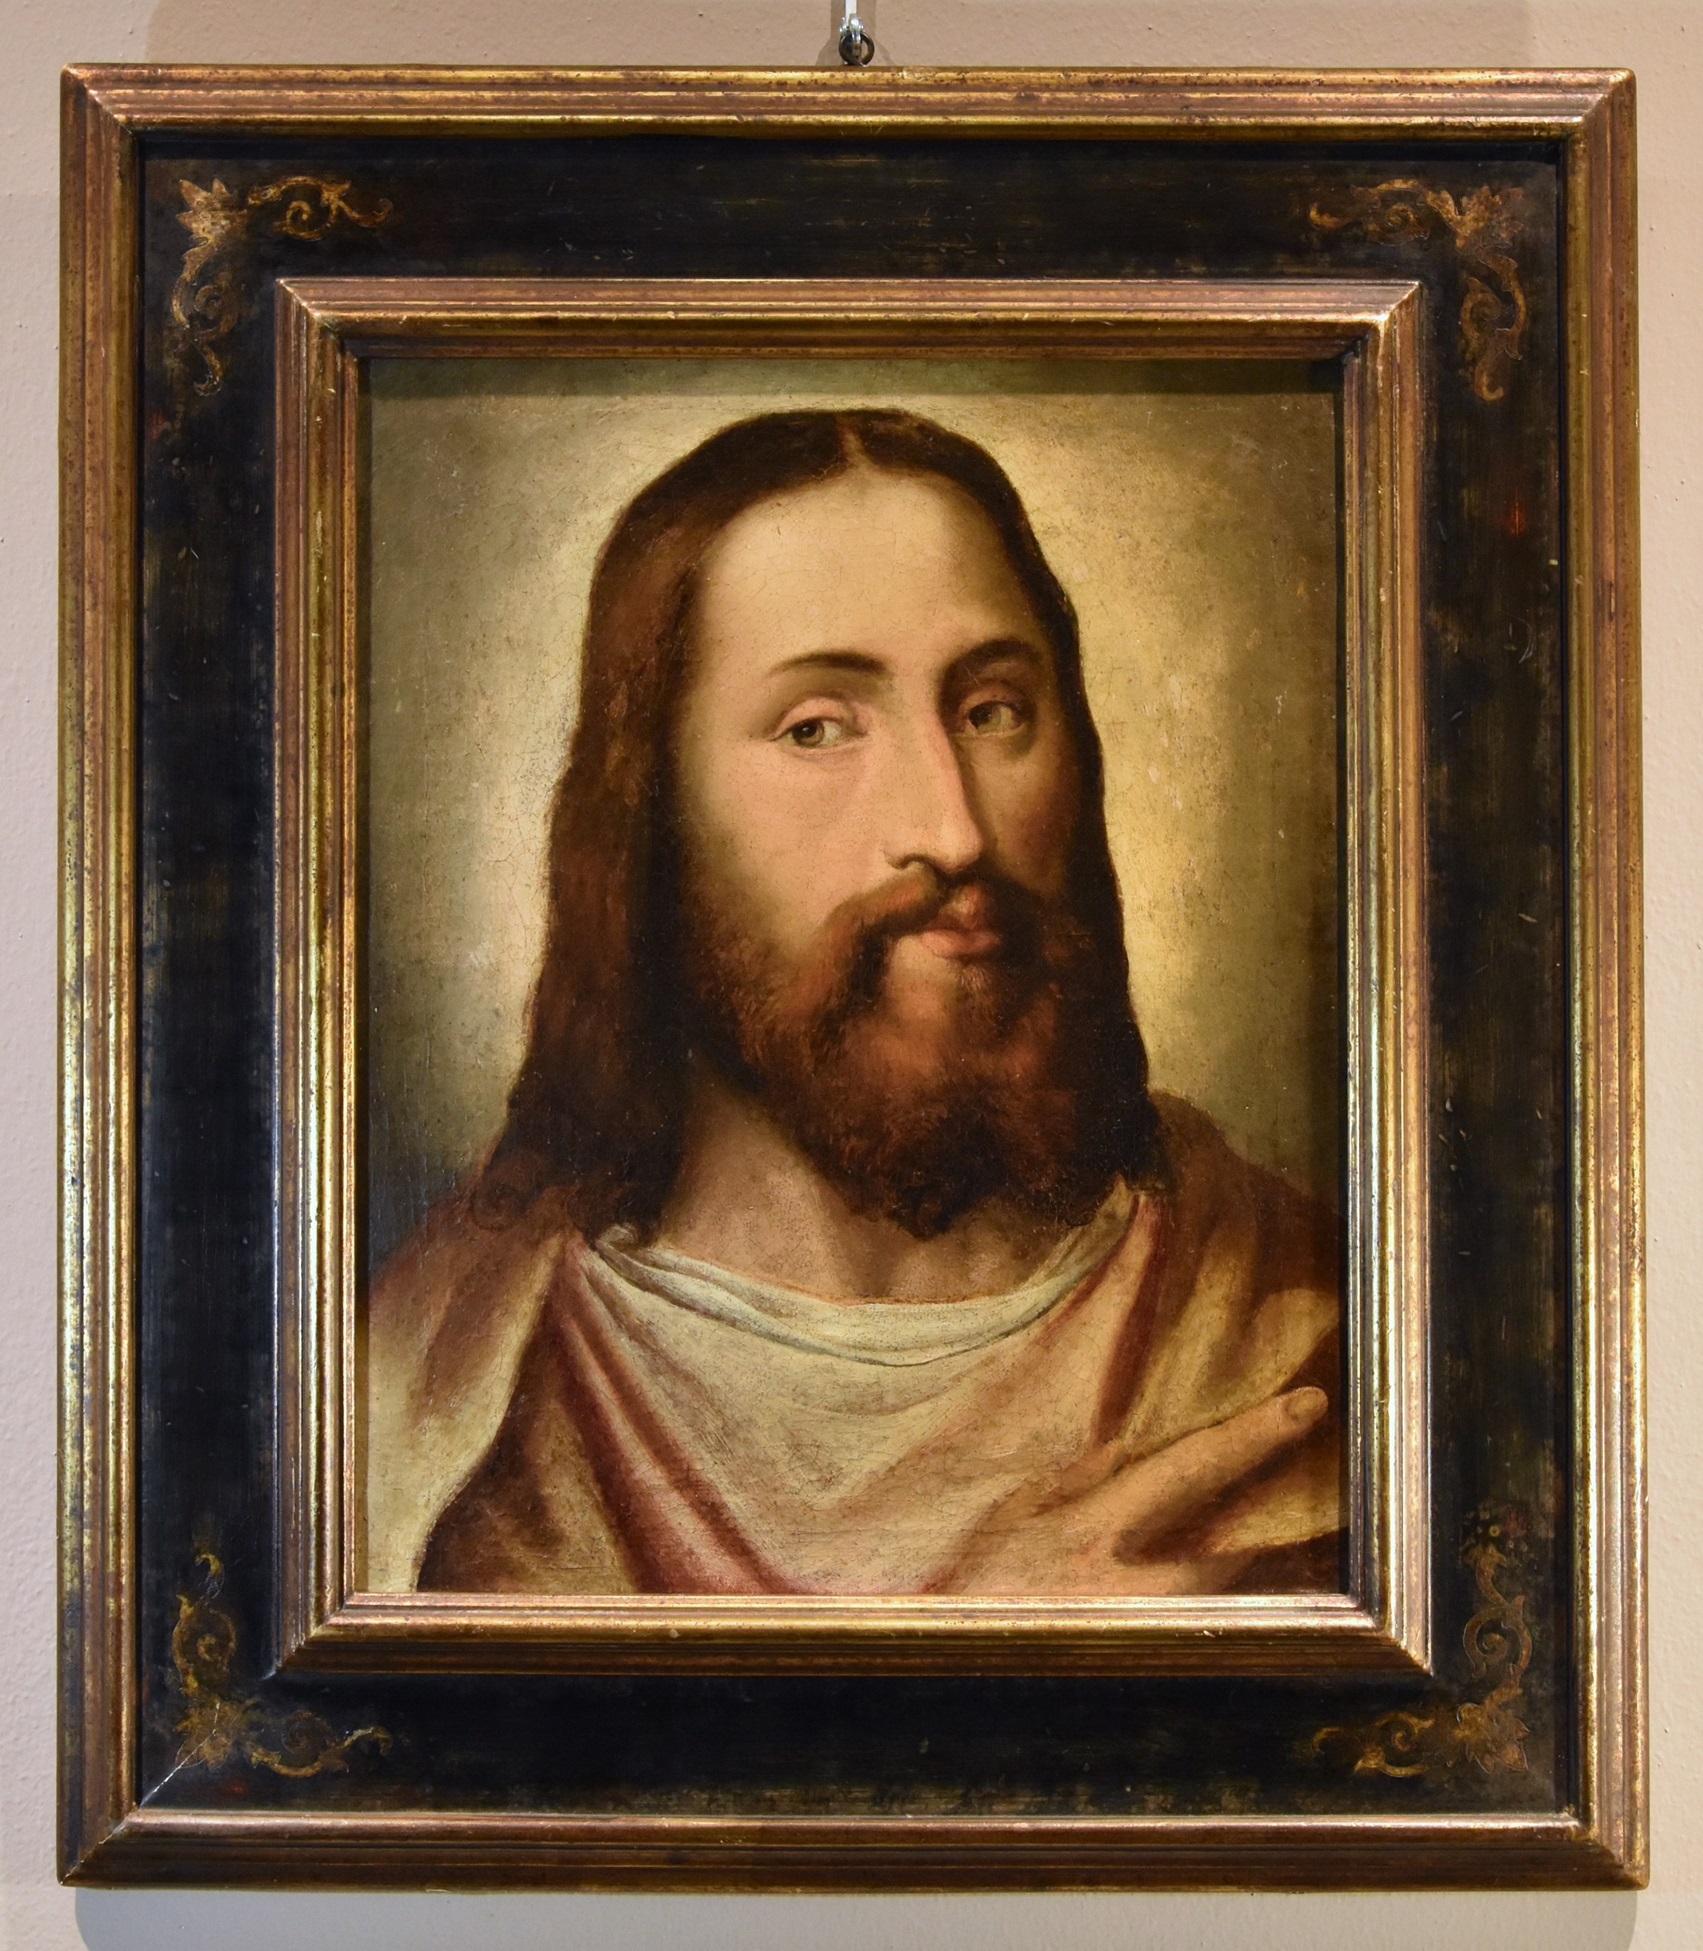 Portrait du Christ Titien 16ème siècle Huile sur toile Grand maître Venezia Italie - Maîtres anciens Painting par Anonymous Titianesque 16th Century 